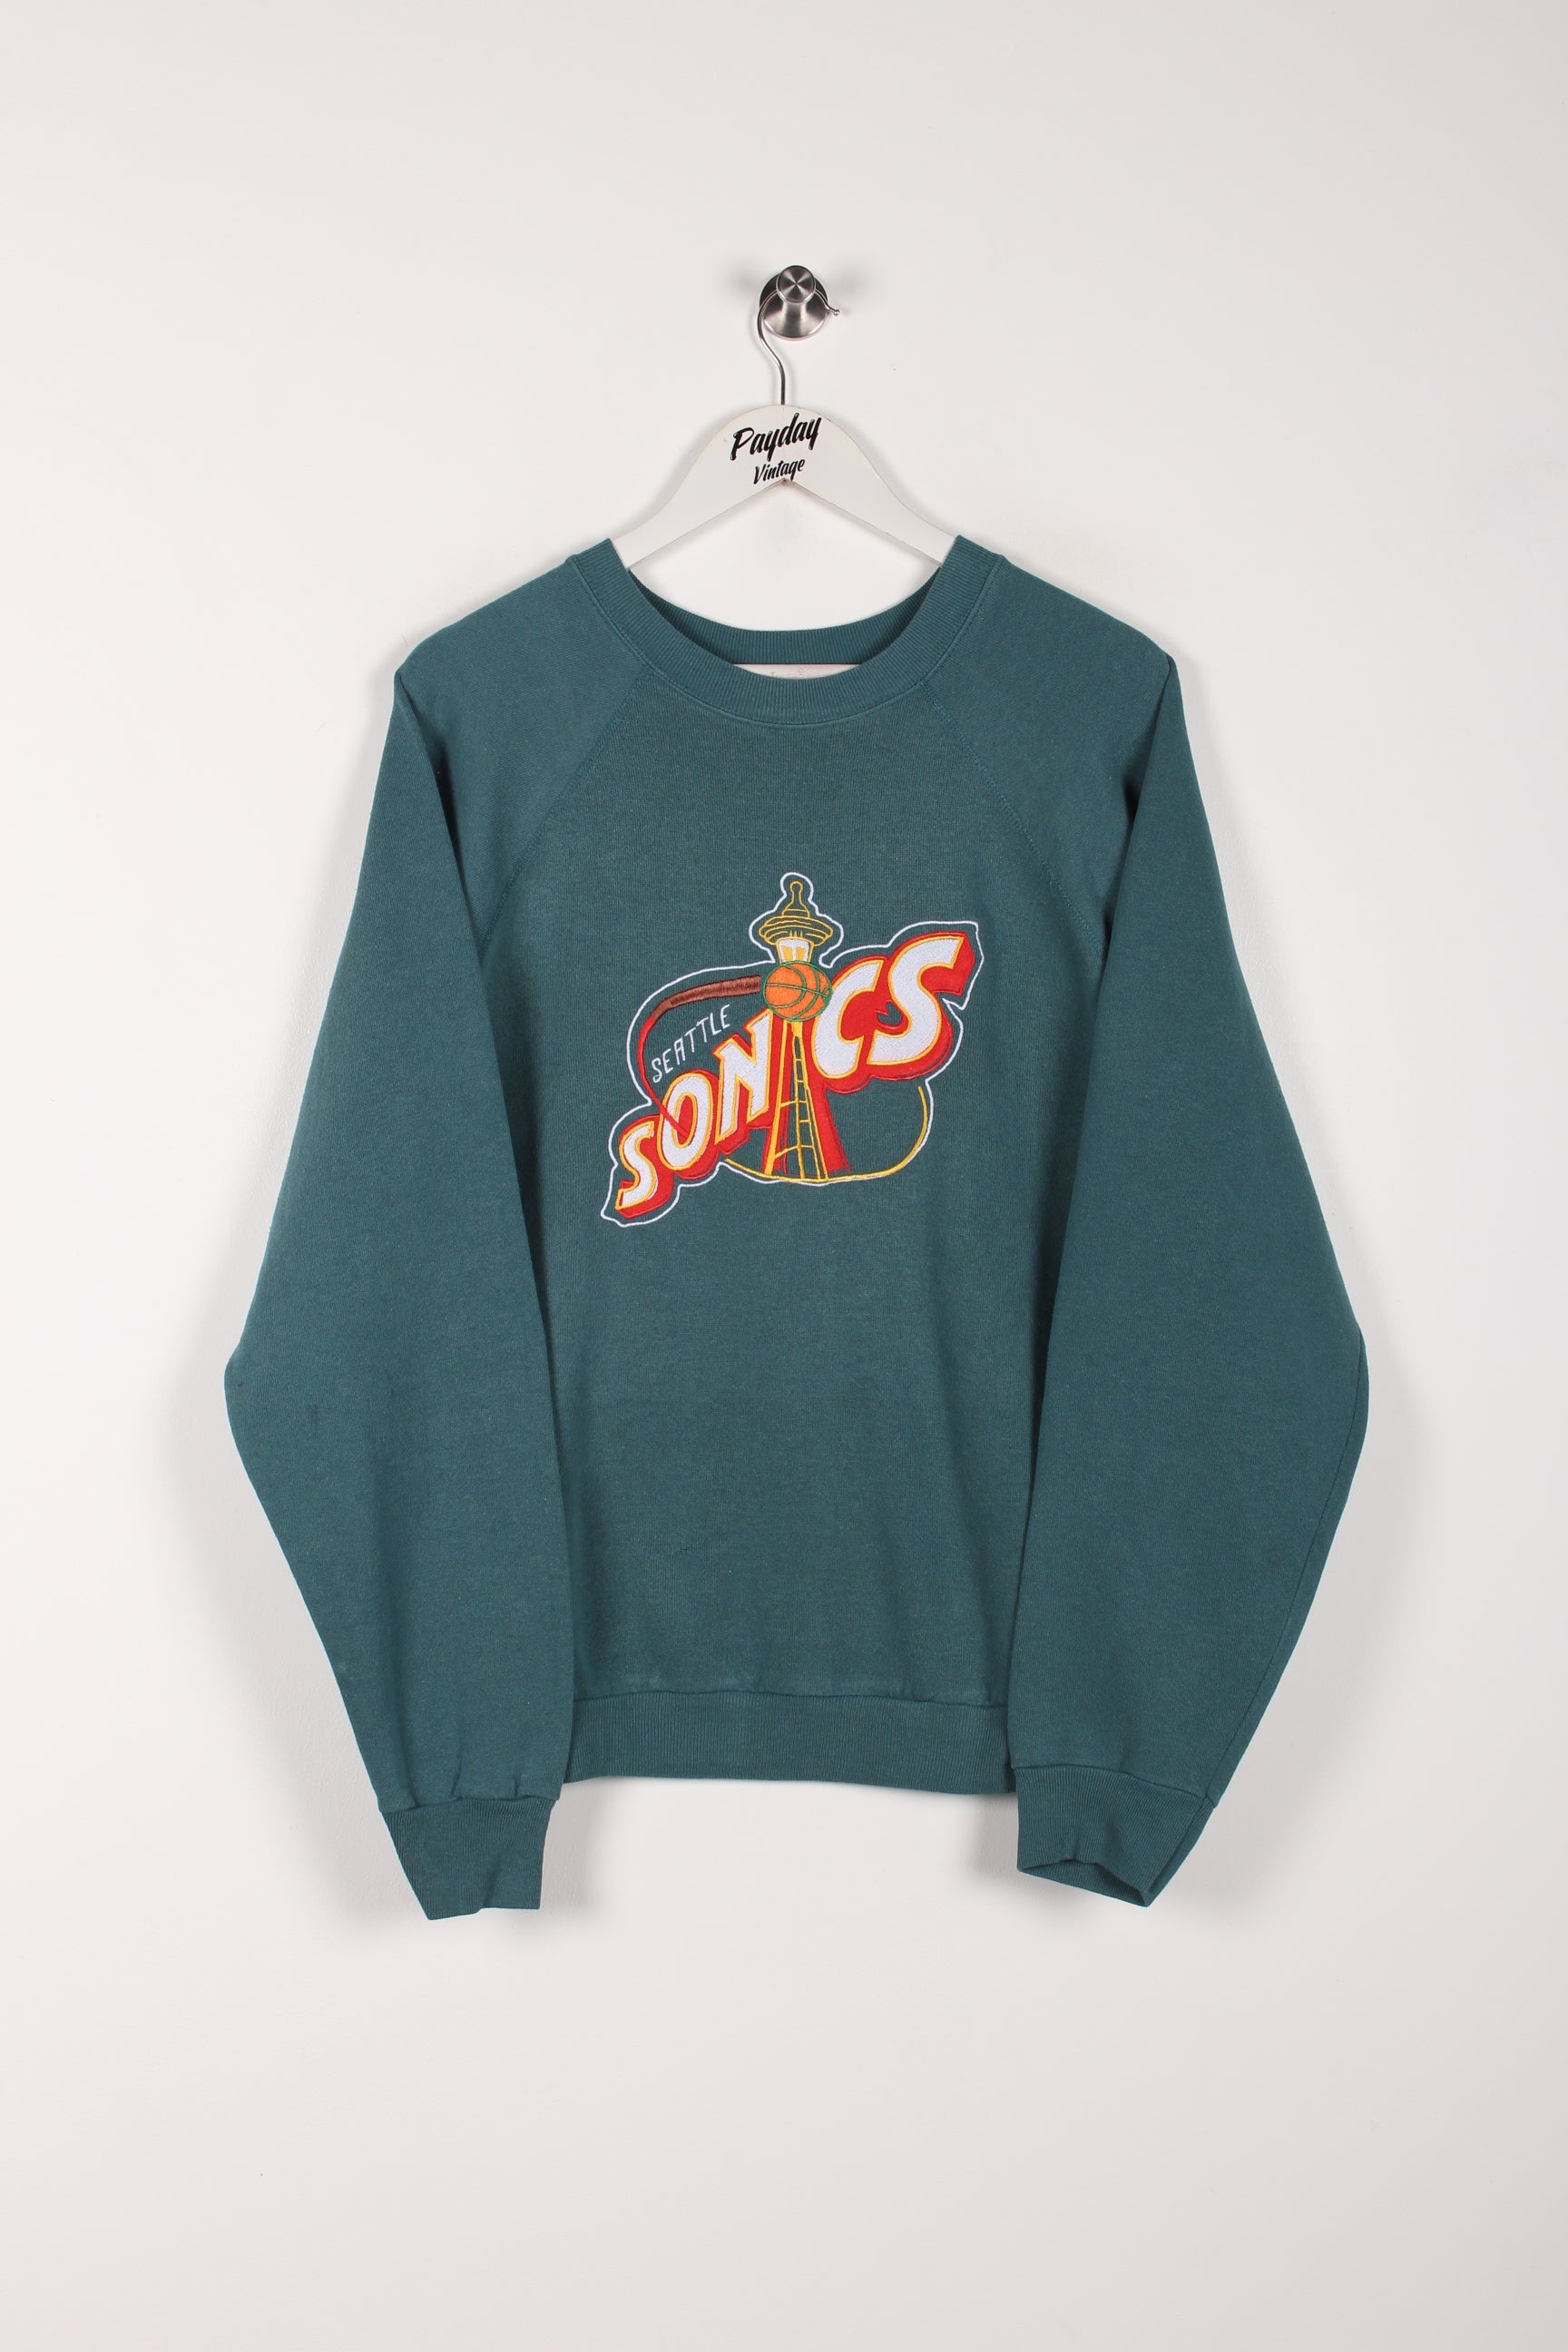 Vintage Seattle Sonics Sweatshirt